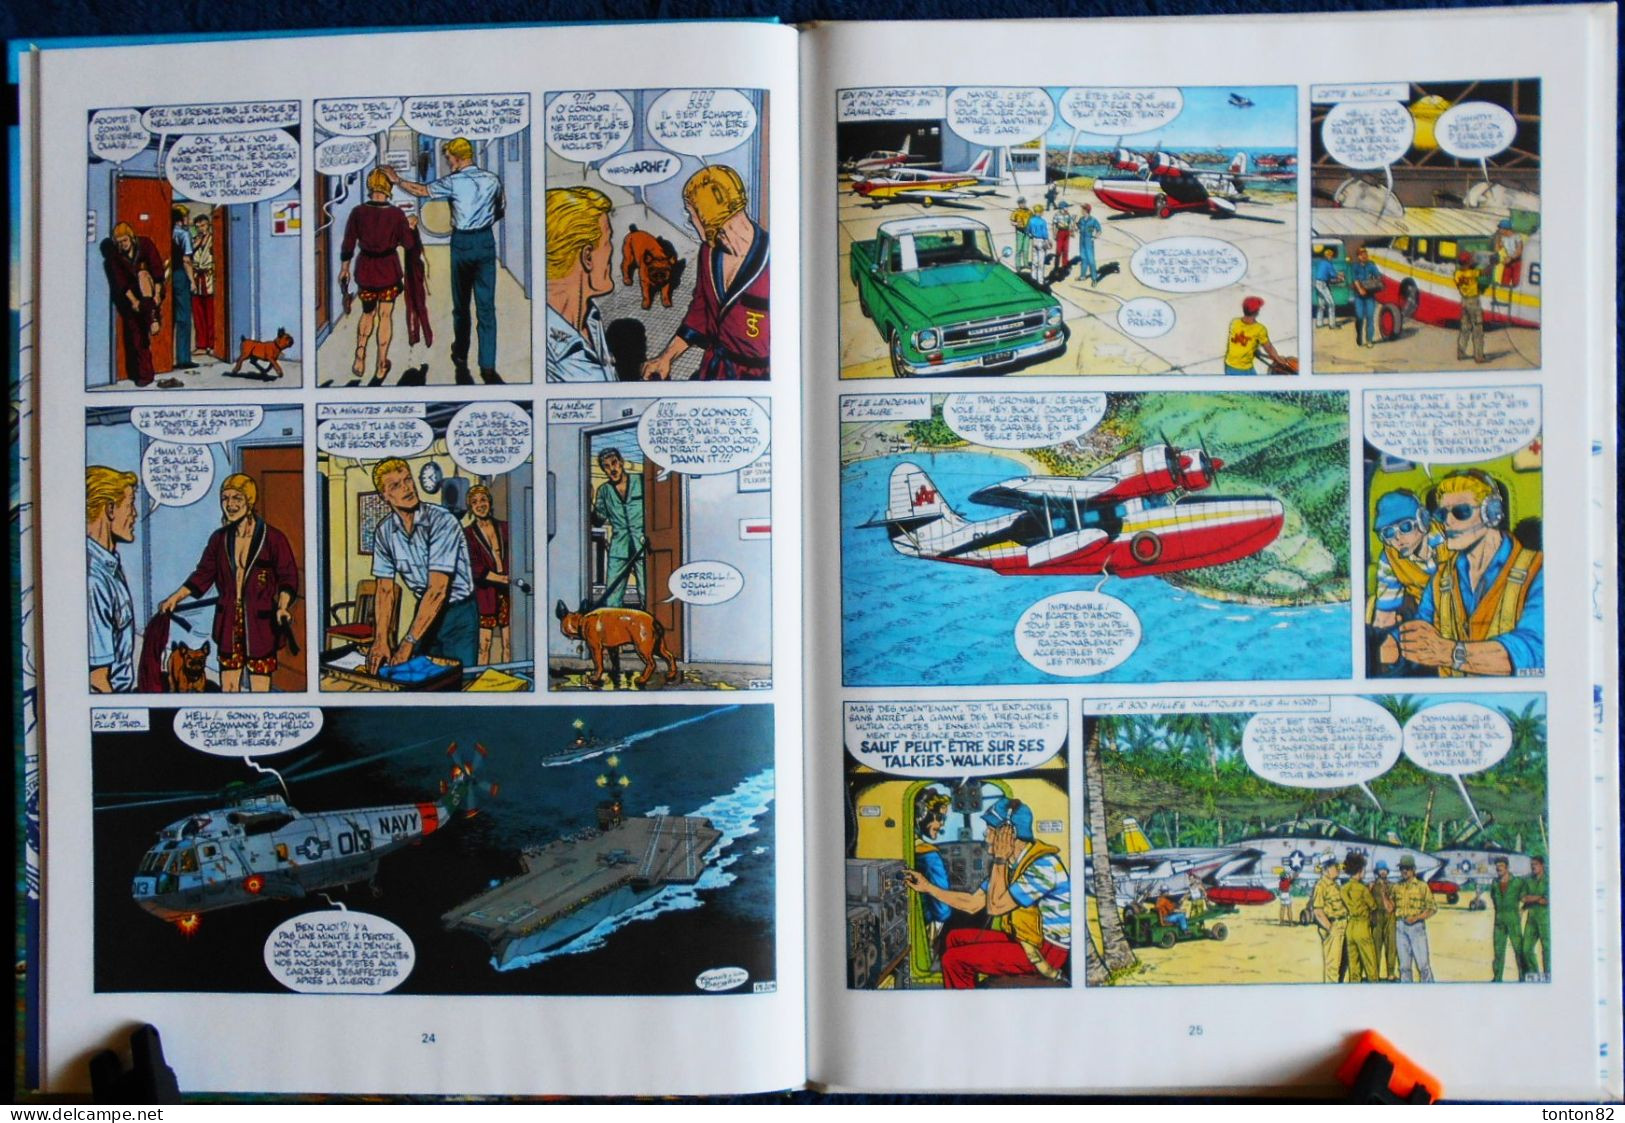 Les aventures de Buck Danny  N° 42 - Les Pilotes de l'enfer - Éditions NOVEDI - ( E.O. 1984 ) .